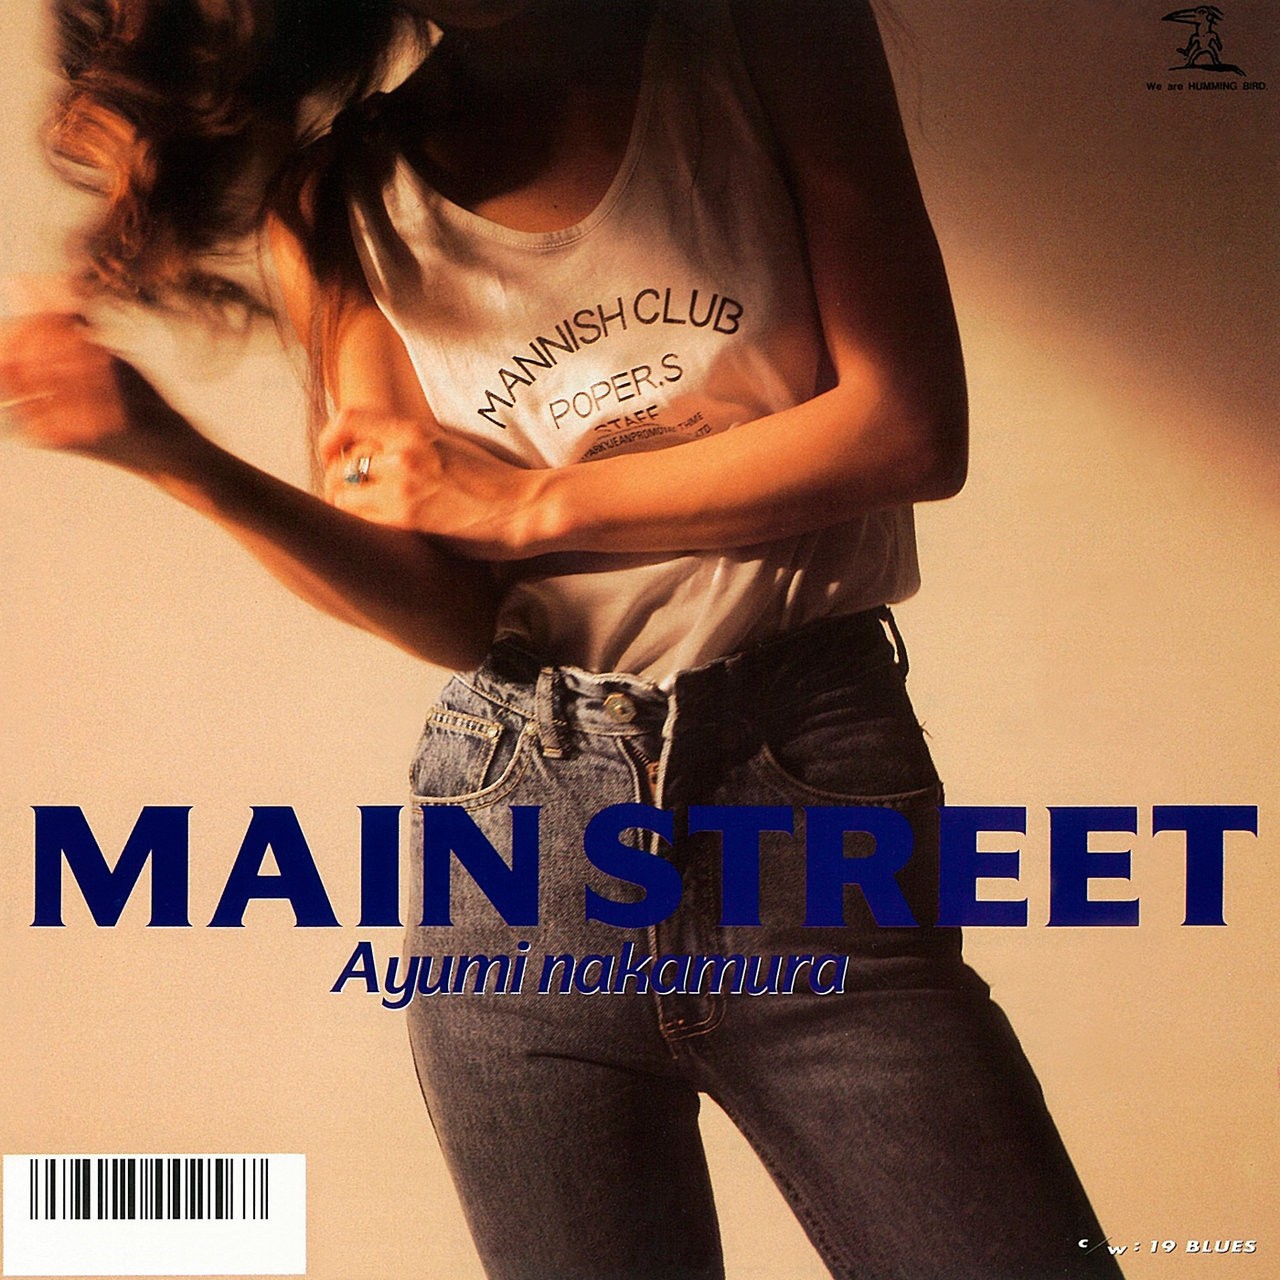 中村あゆみ (Ayumi Nakamura) -メインストリート / 19 BLUES (2019 Remastered) (1989/2019) [FLAC 24bit/48kHz]